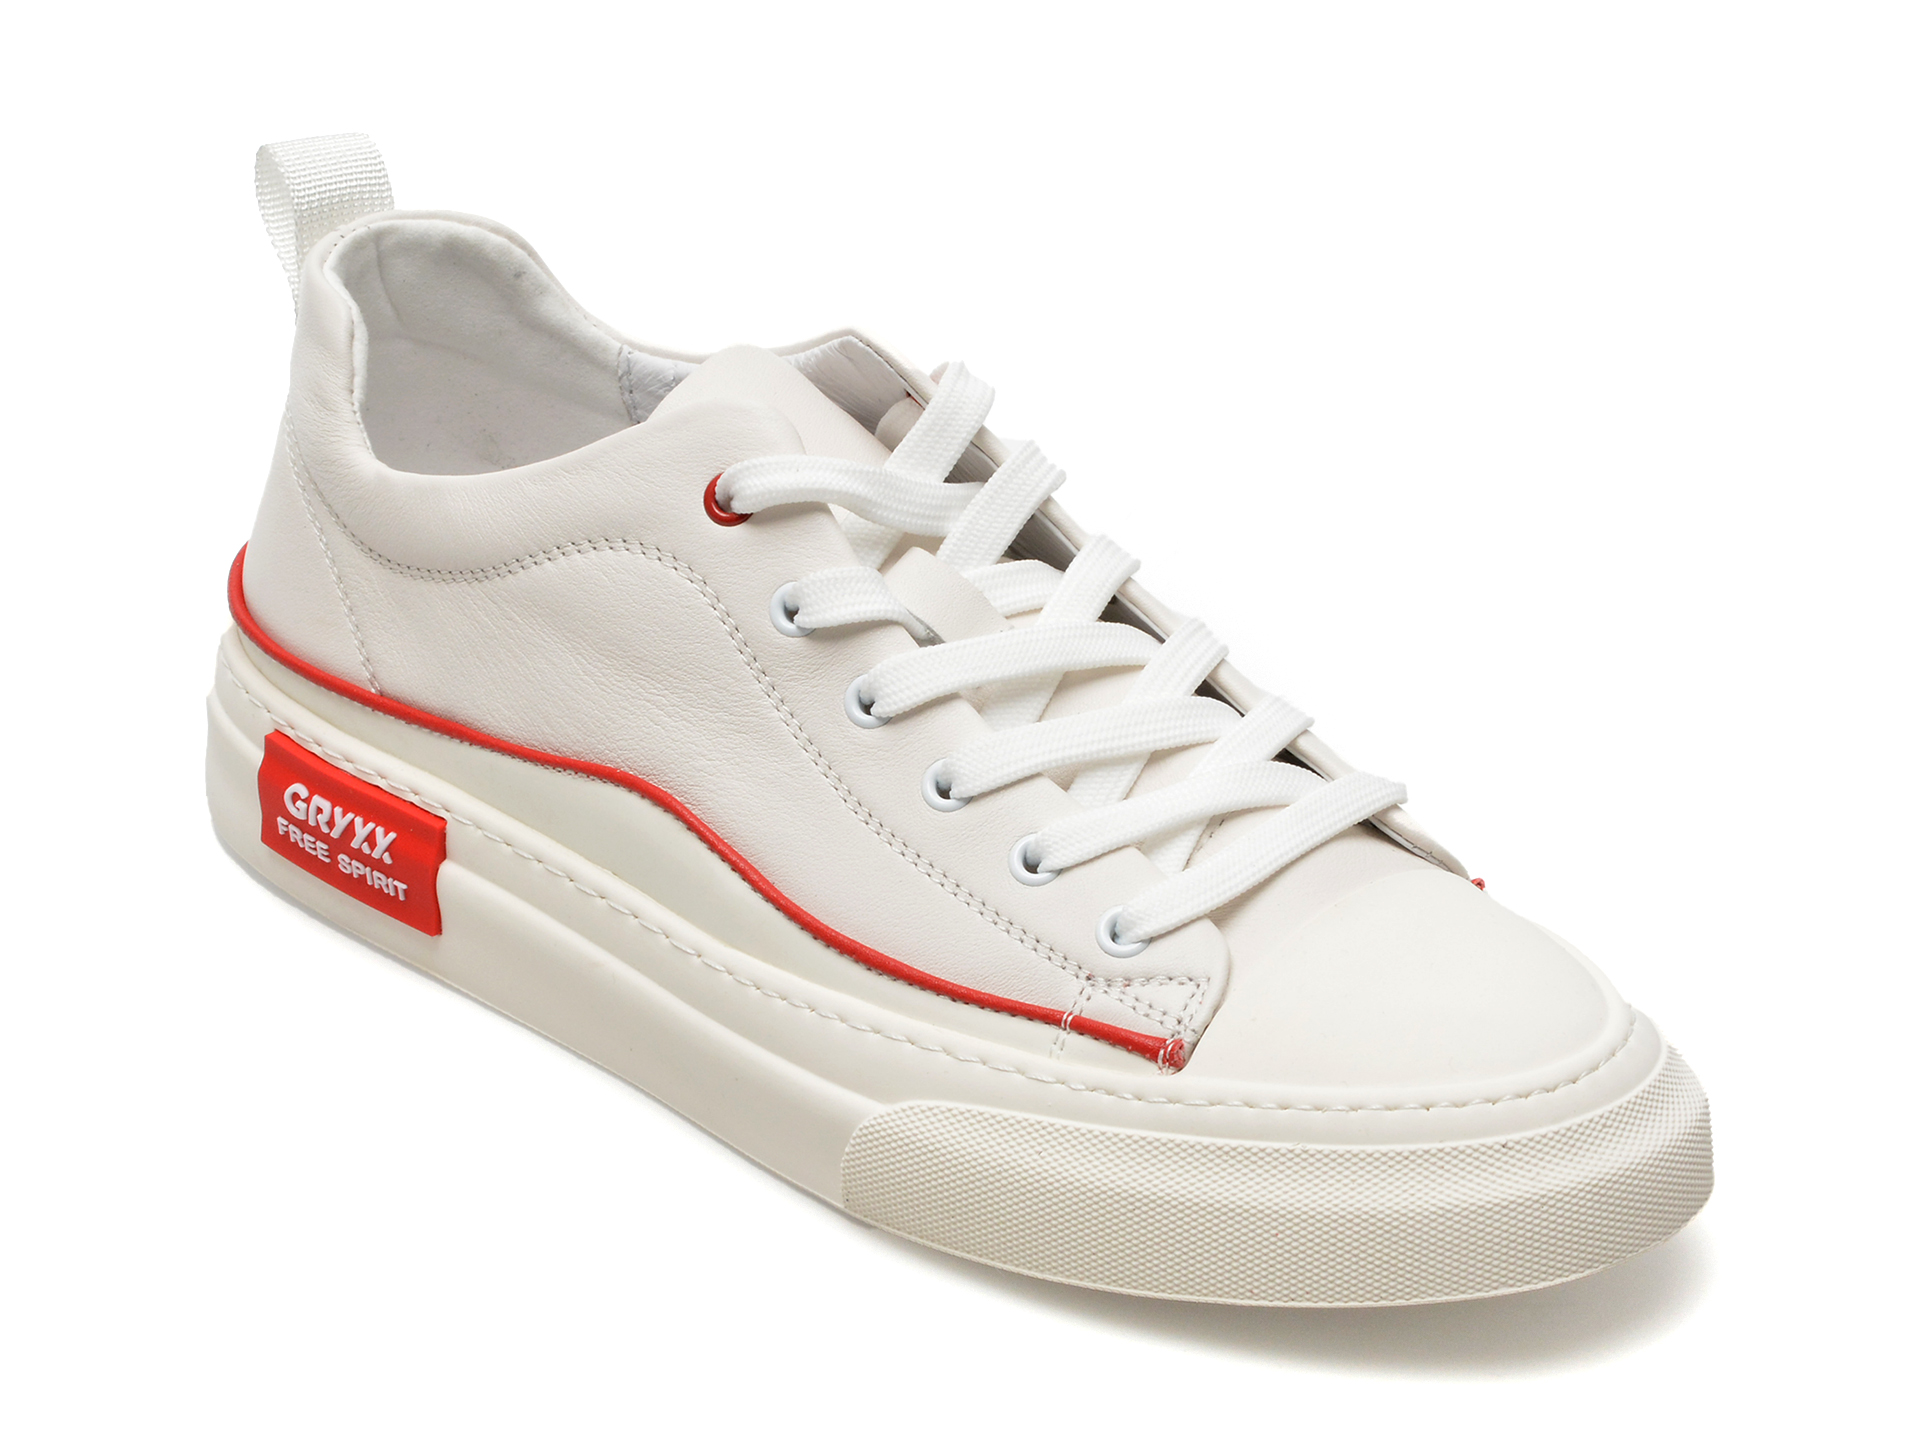 Pantofi GRYXX albi, EE22716, din piele naturala